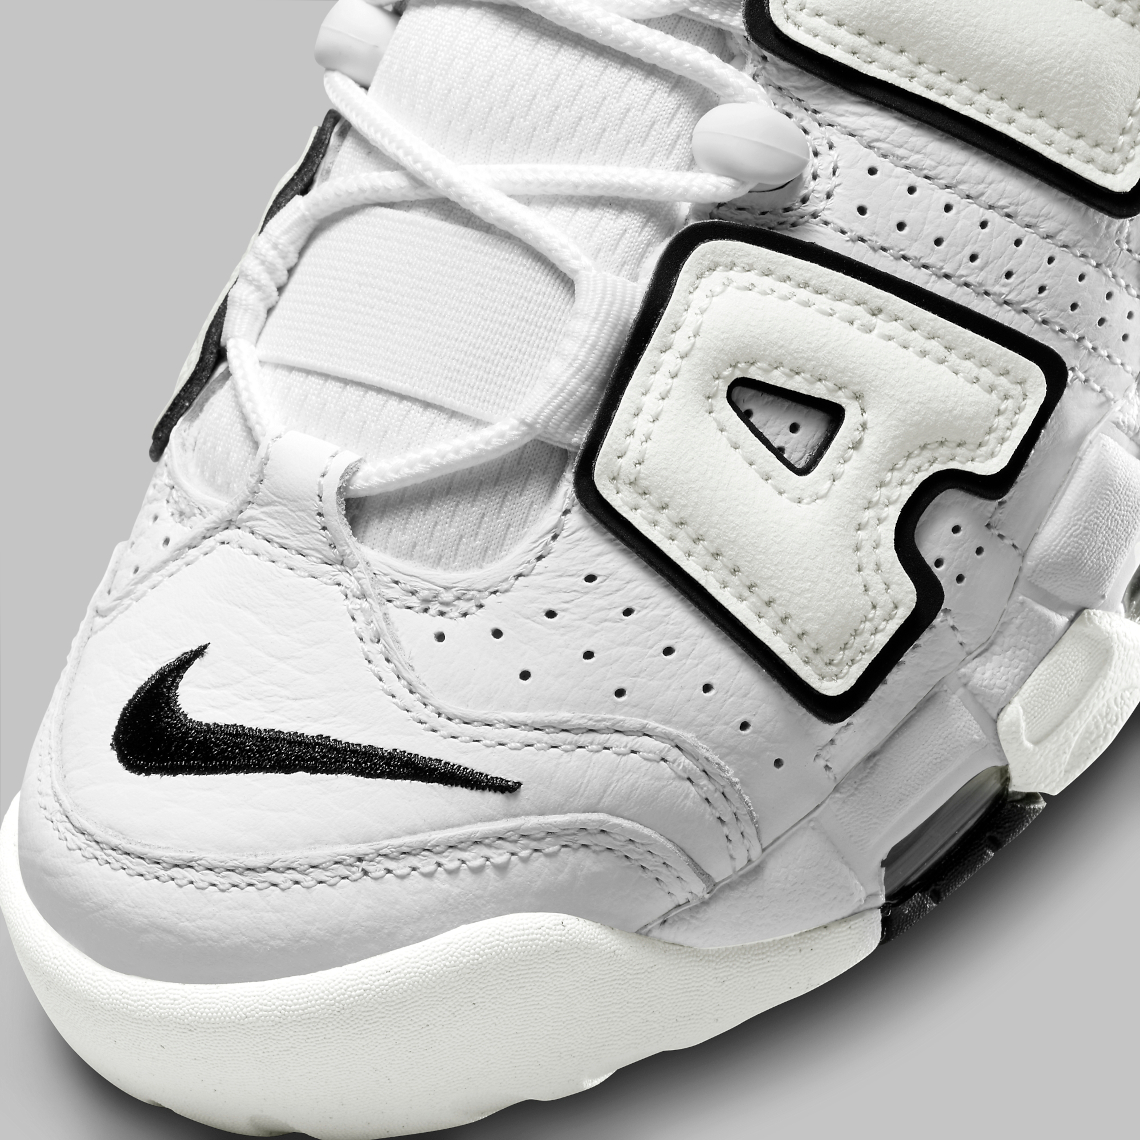 Nike Air More Uptempo White Black DO6718-100 | SneakerNews.com